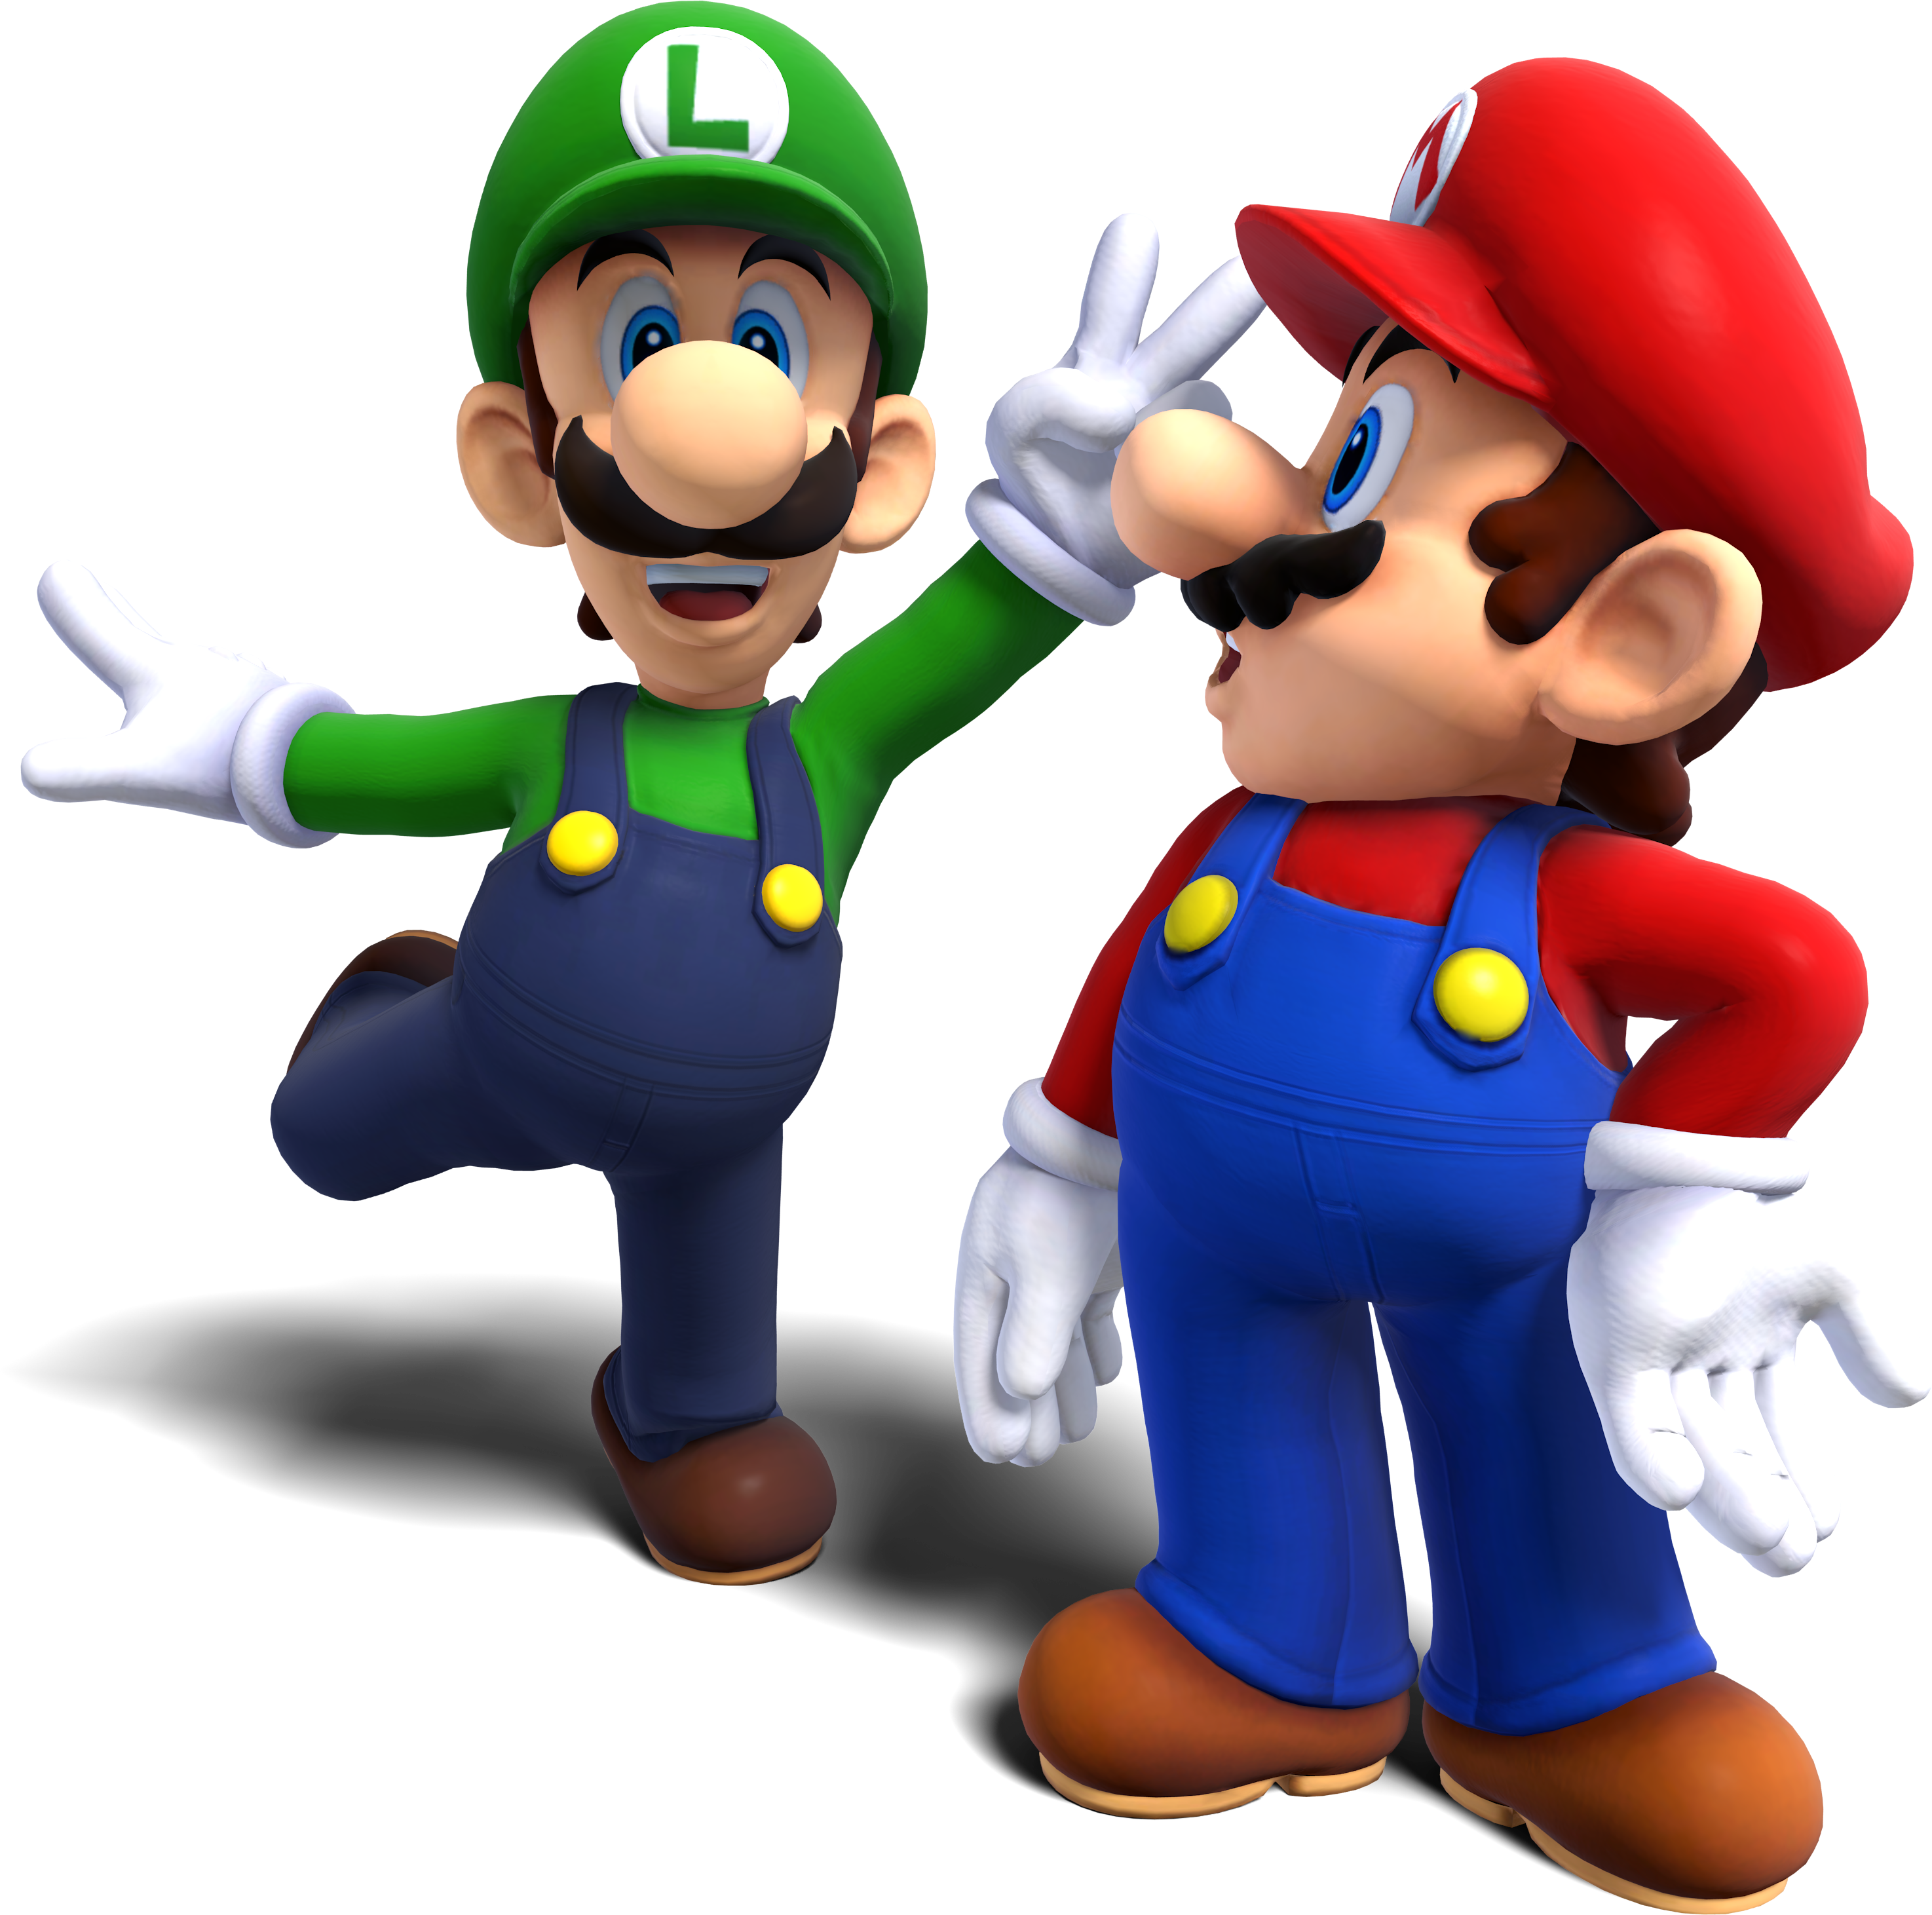 Super Mario & Luigi PNG Image